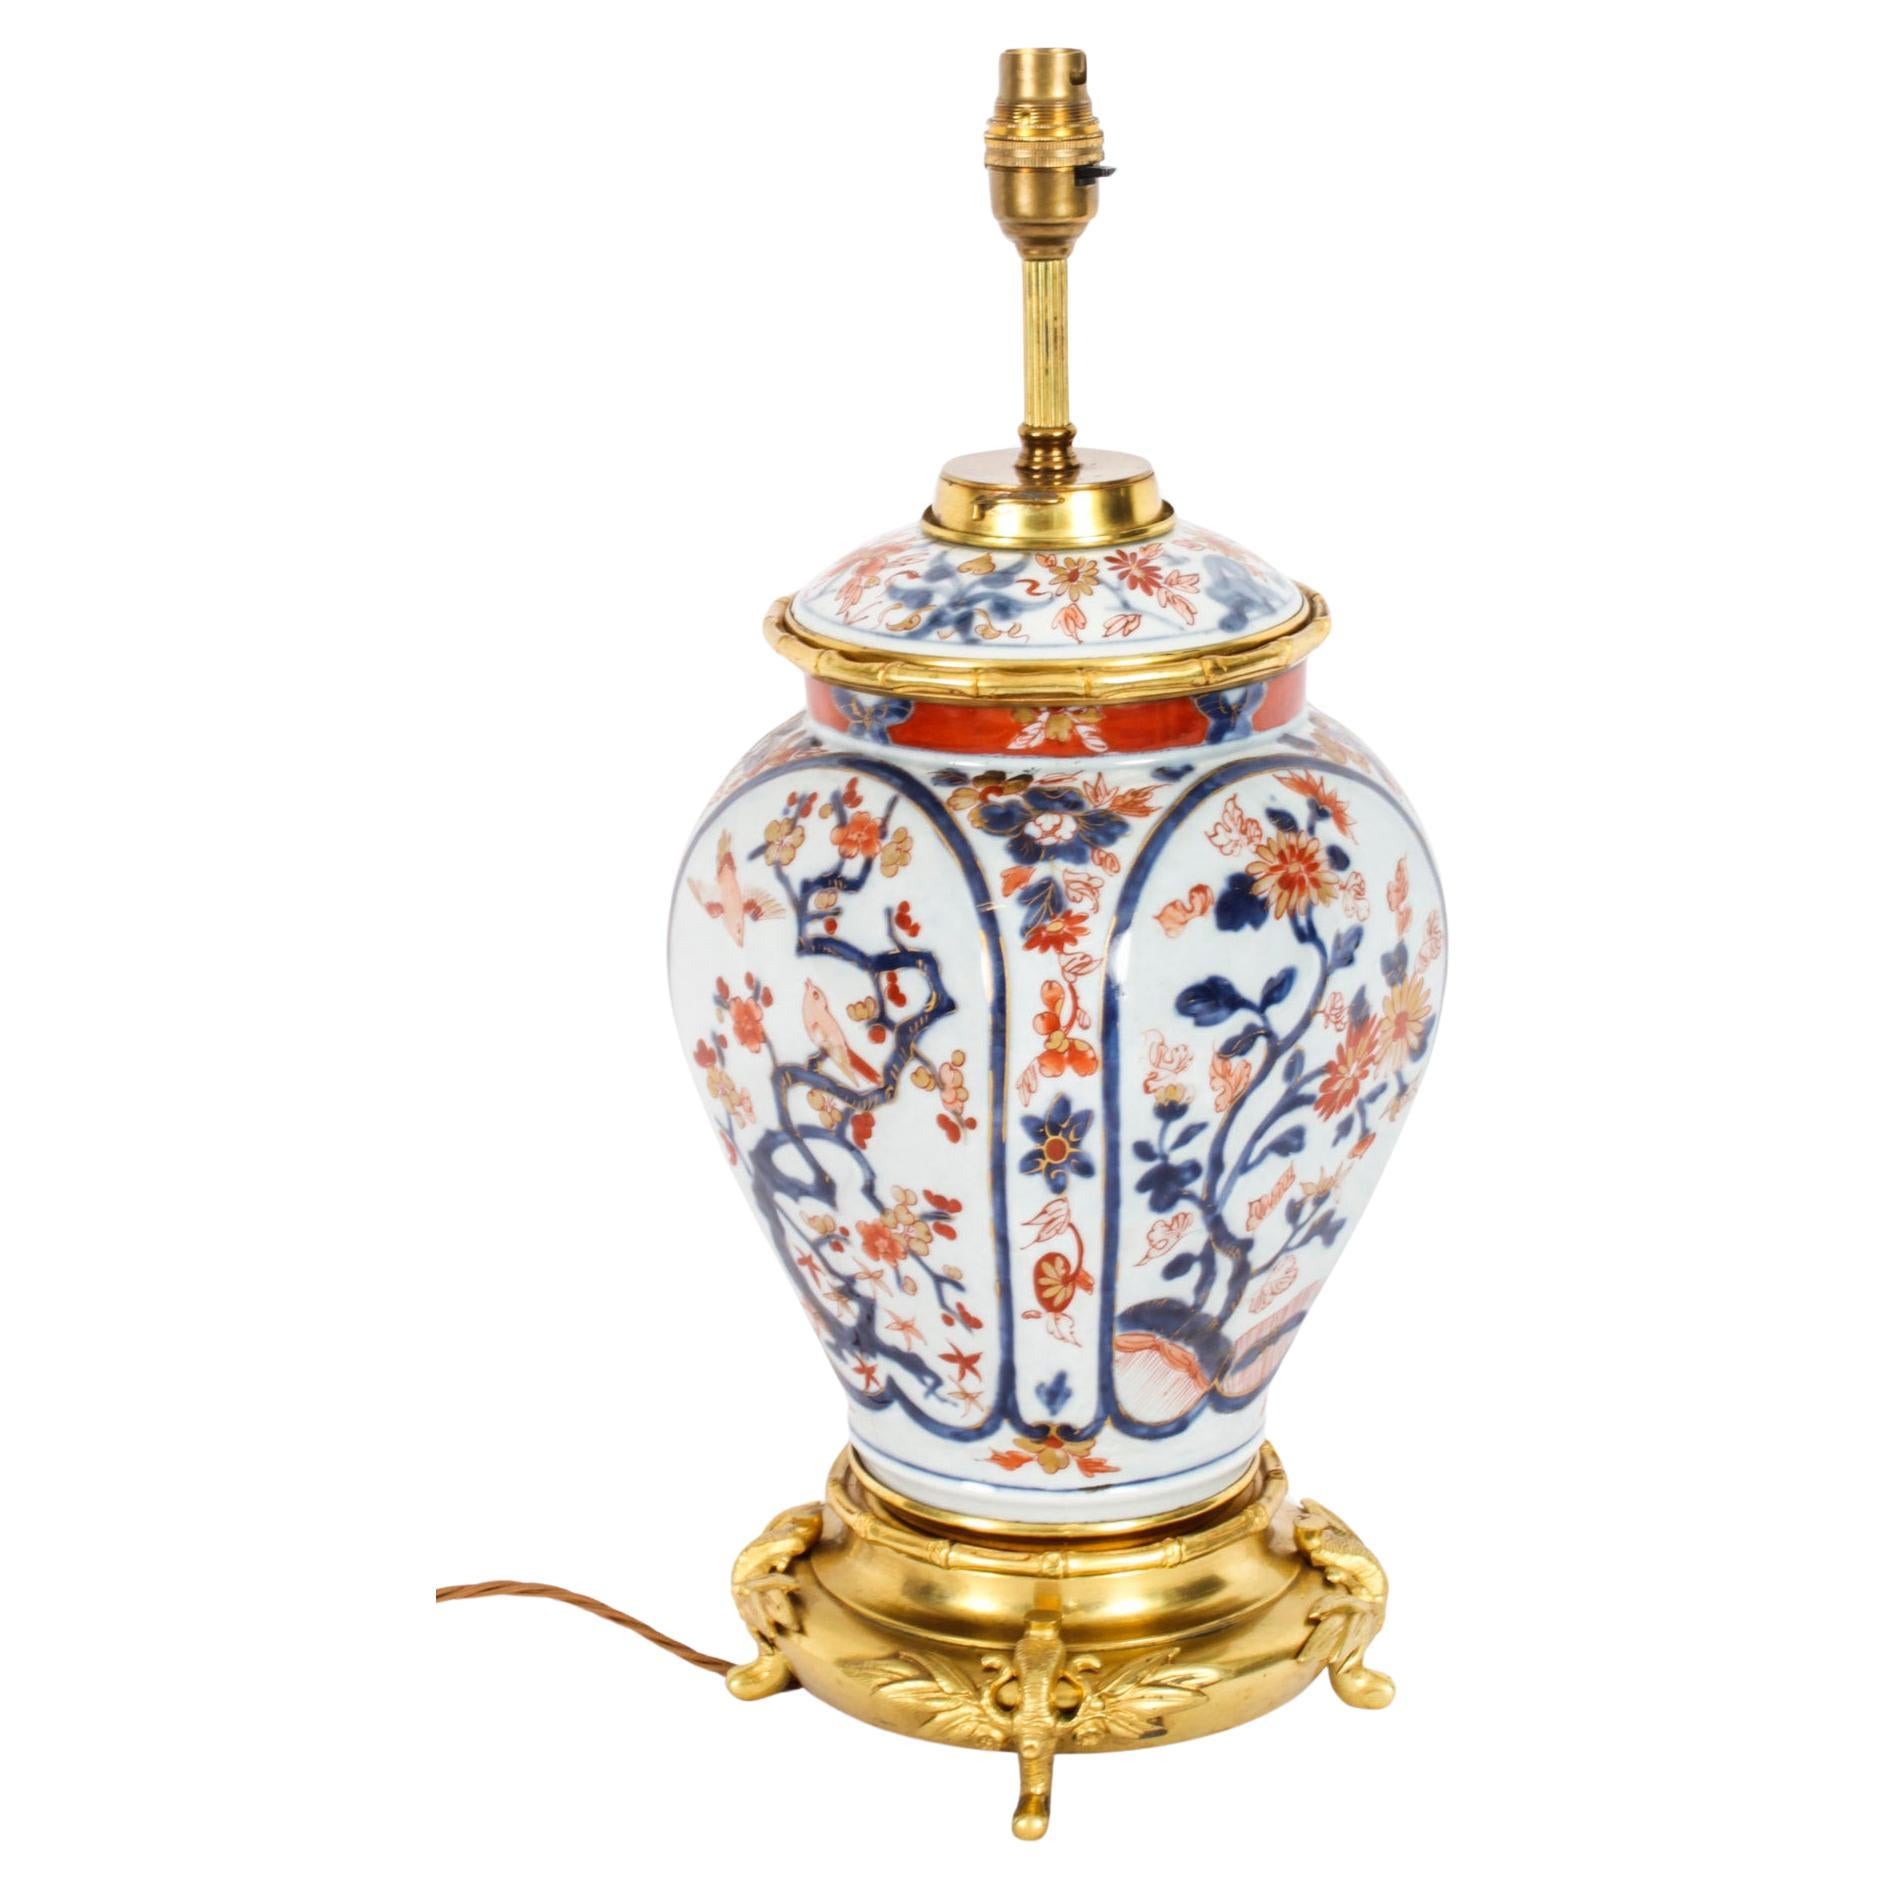 Ancienne lampe de table en porcelaine Imari C. 1840 19ème siècle